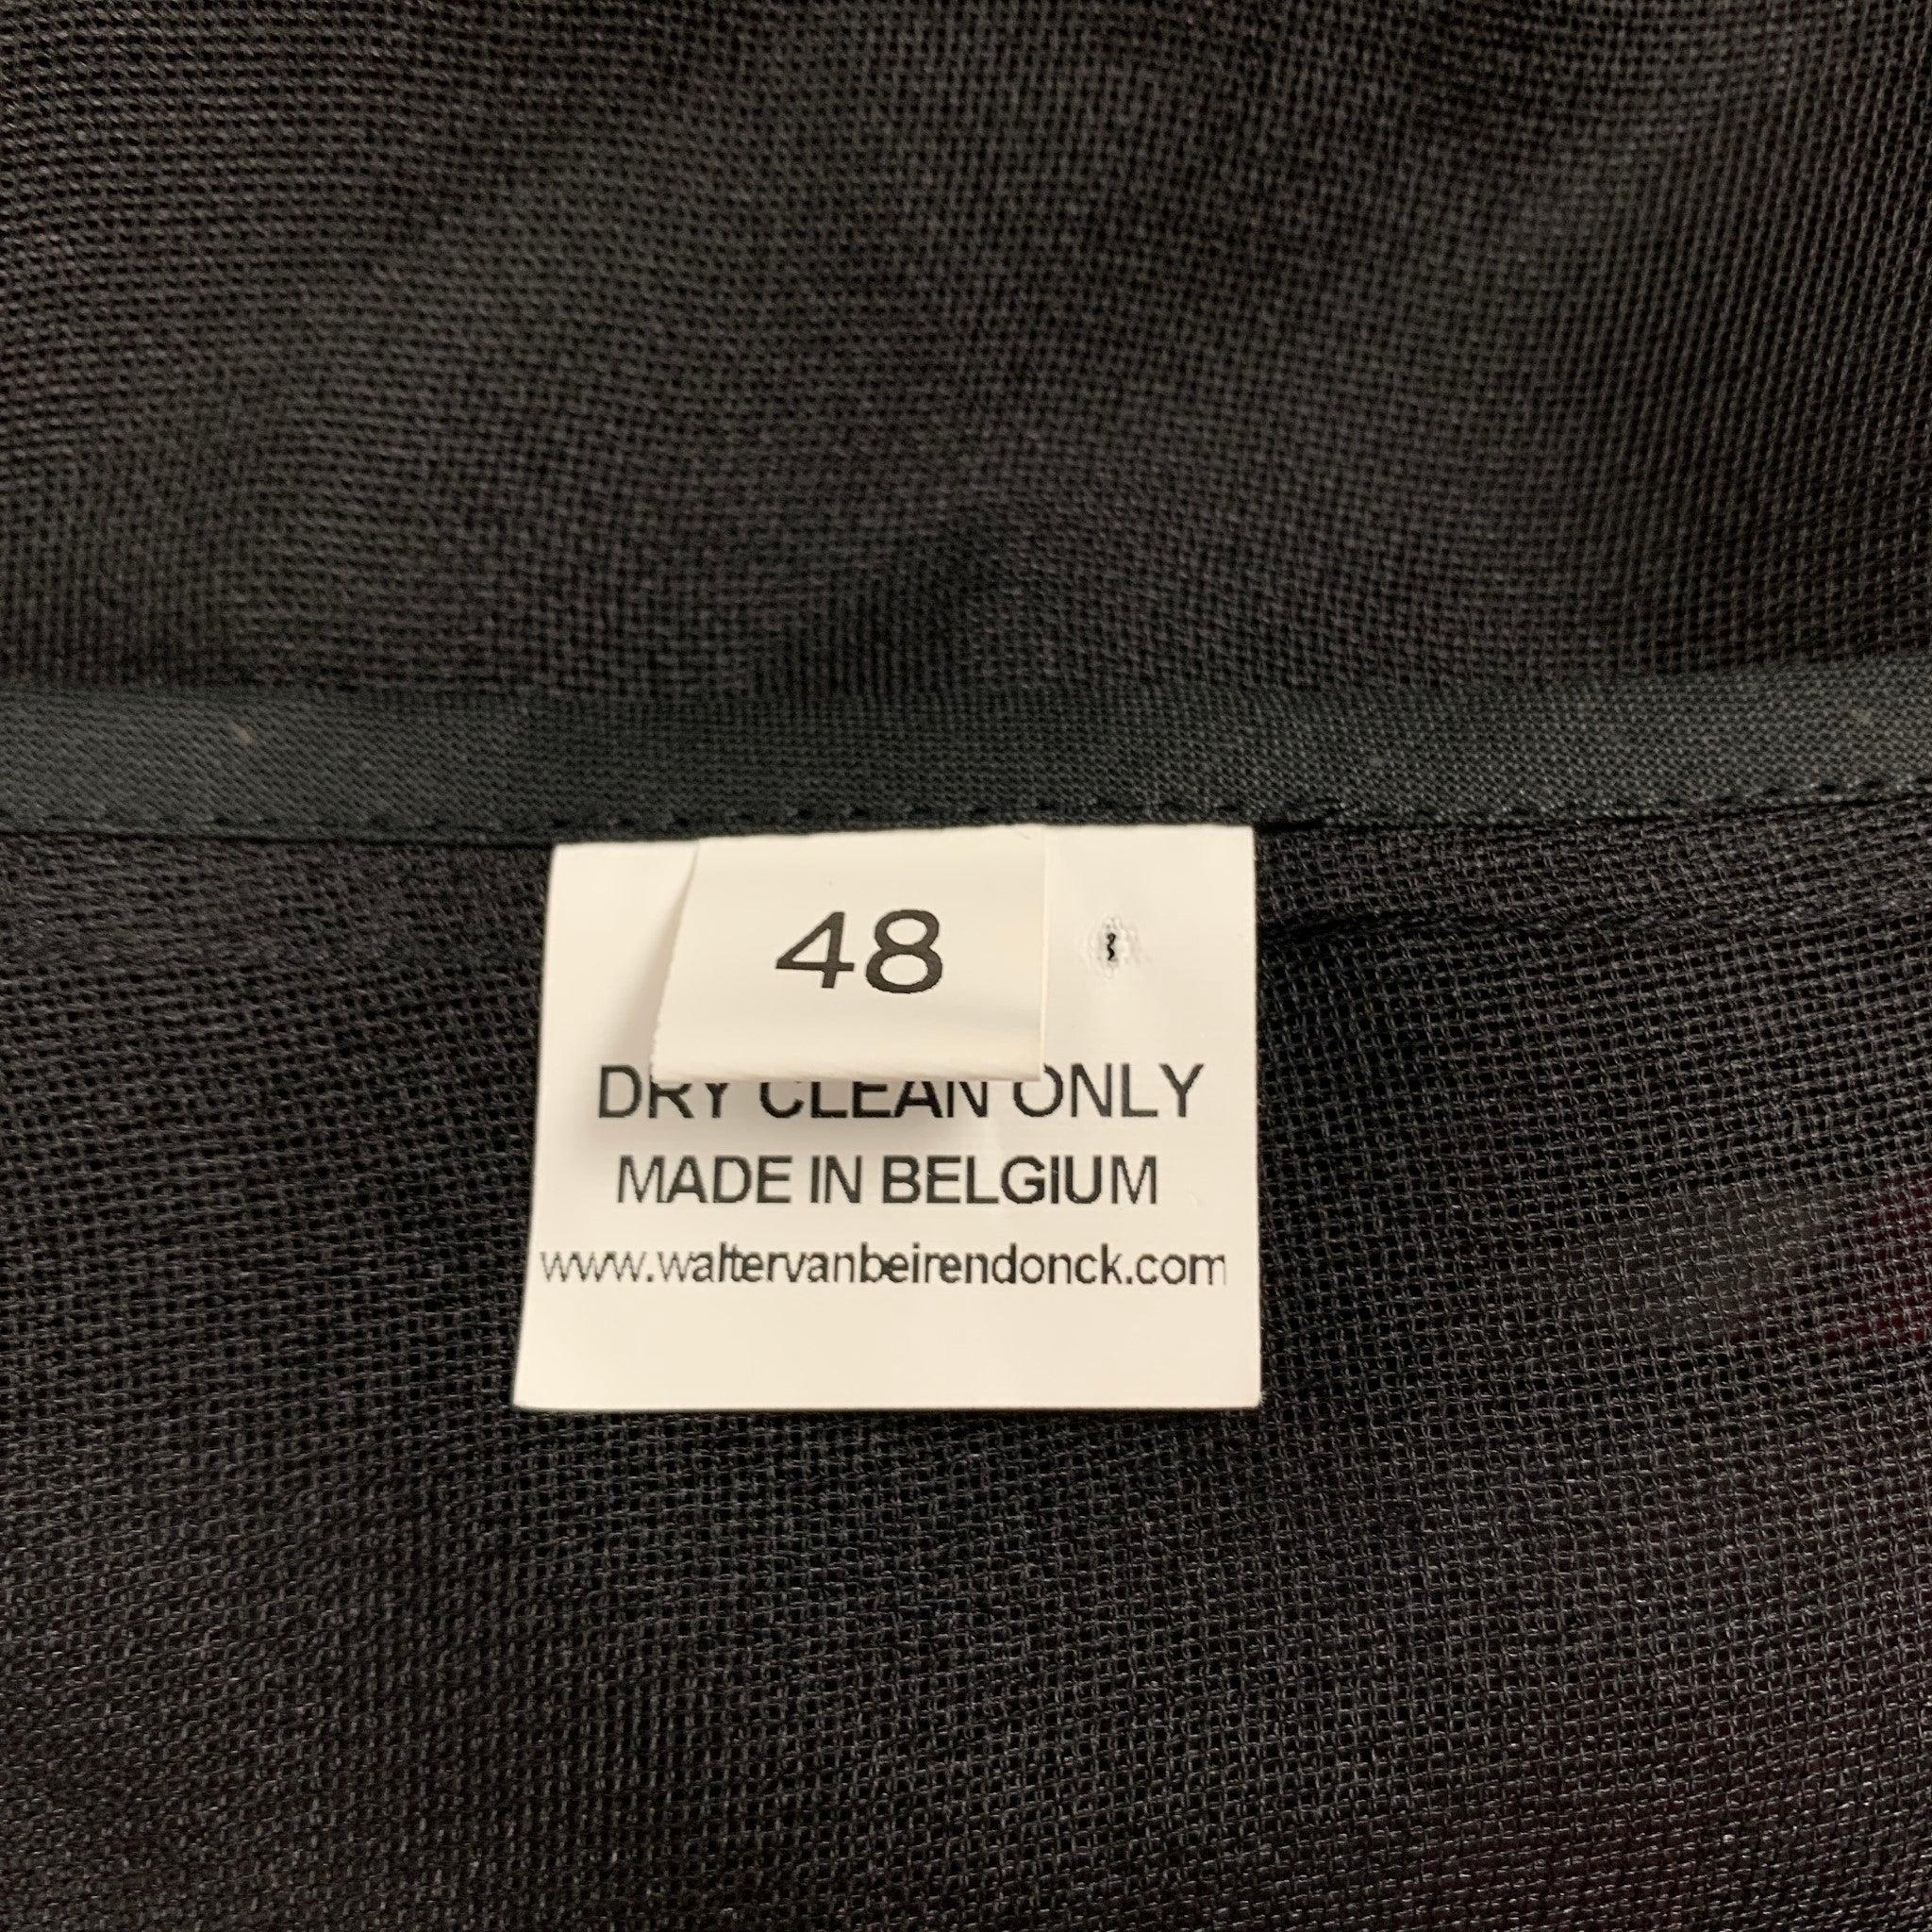 WALTER VAN BEIRENDONCK SS 16 Size 38 Black Multi-Color Silk Jacket For Sale 1